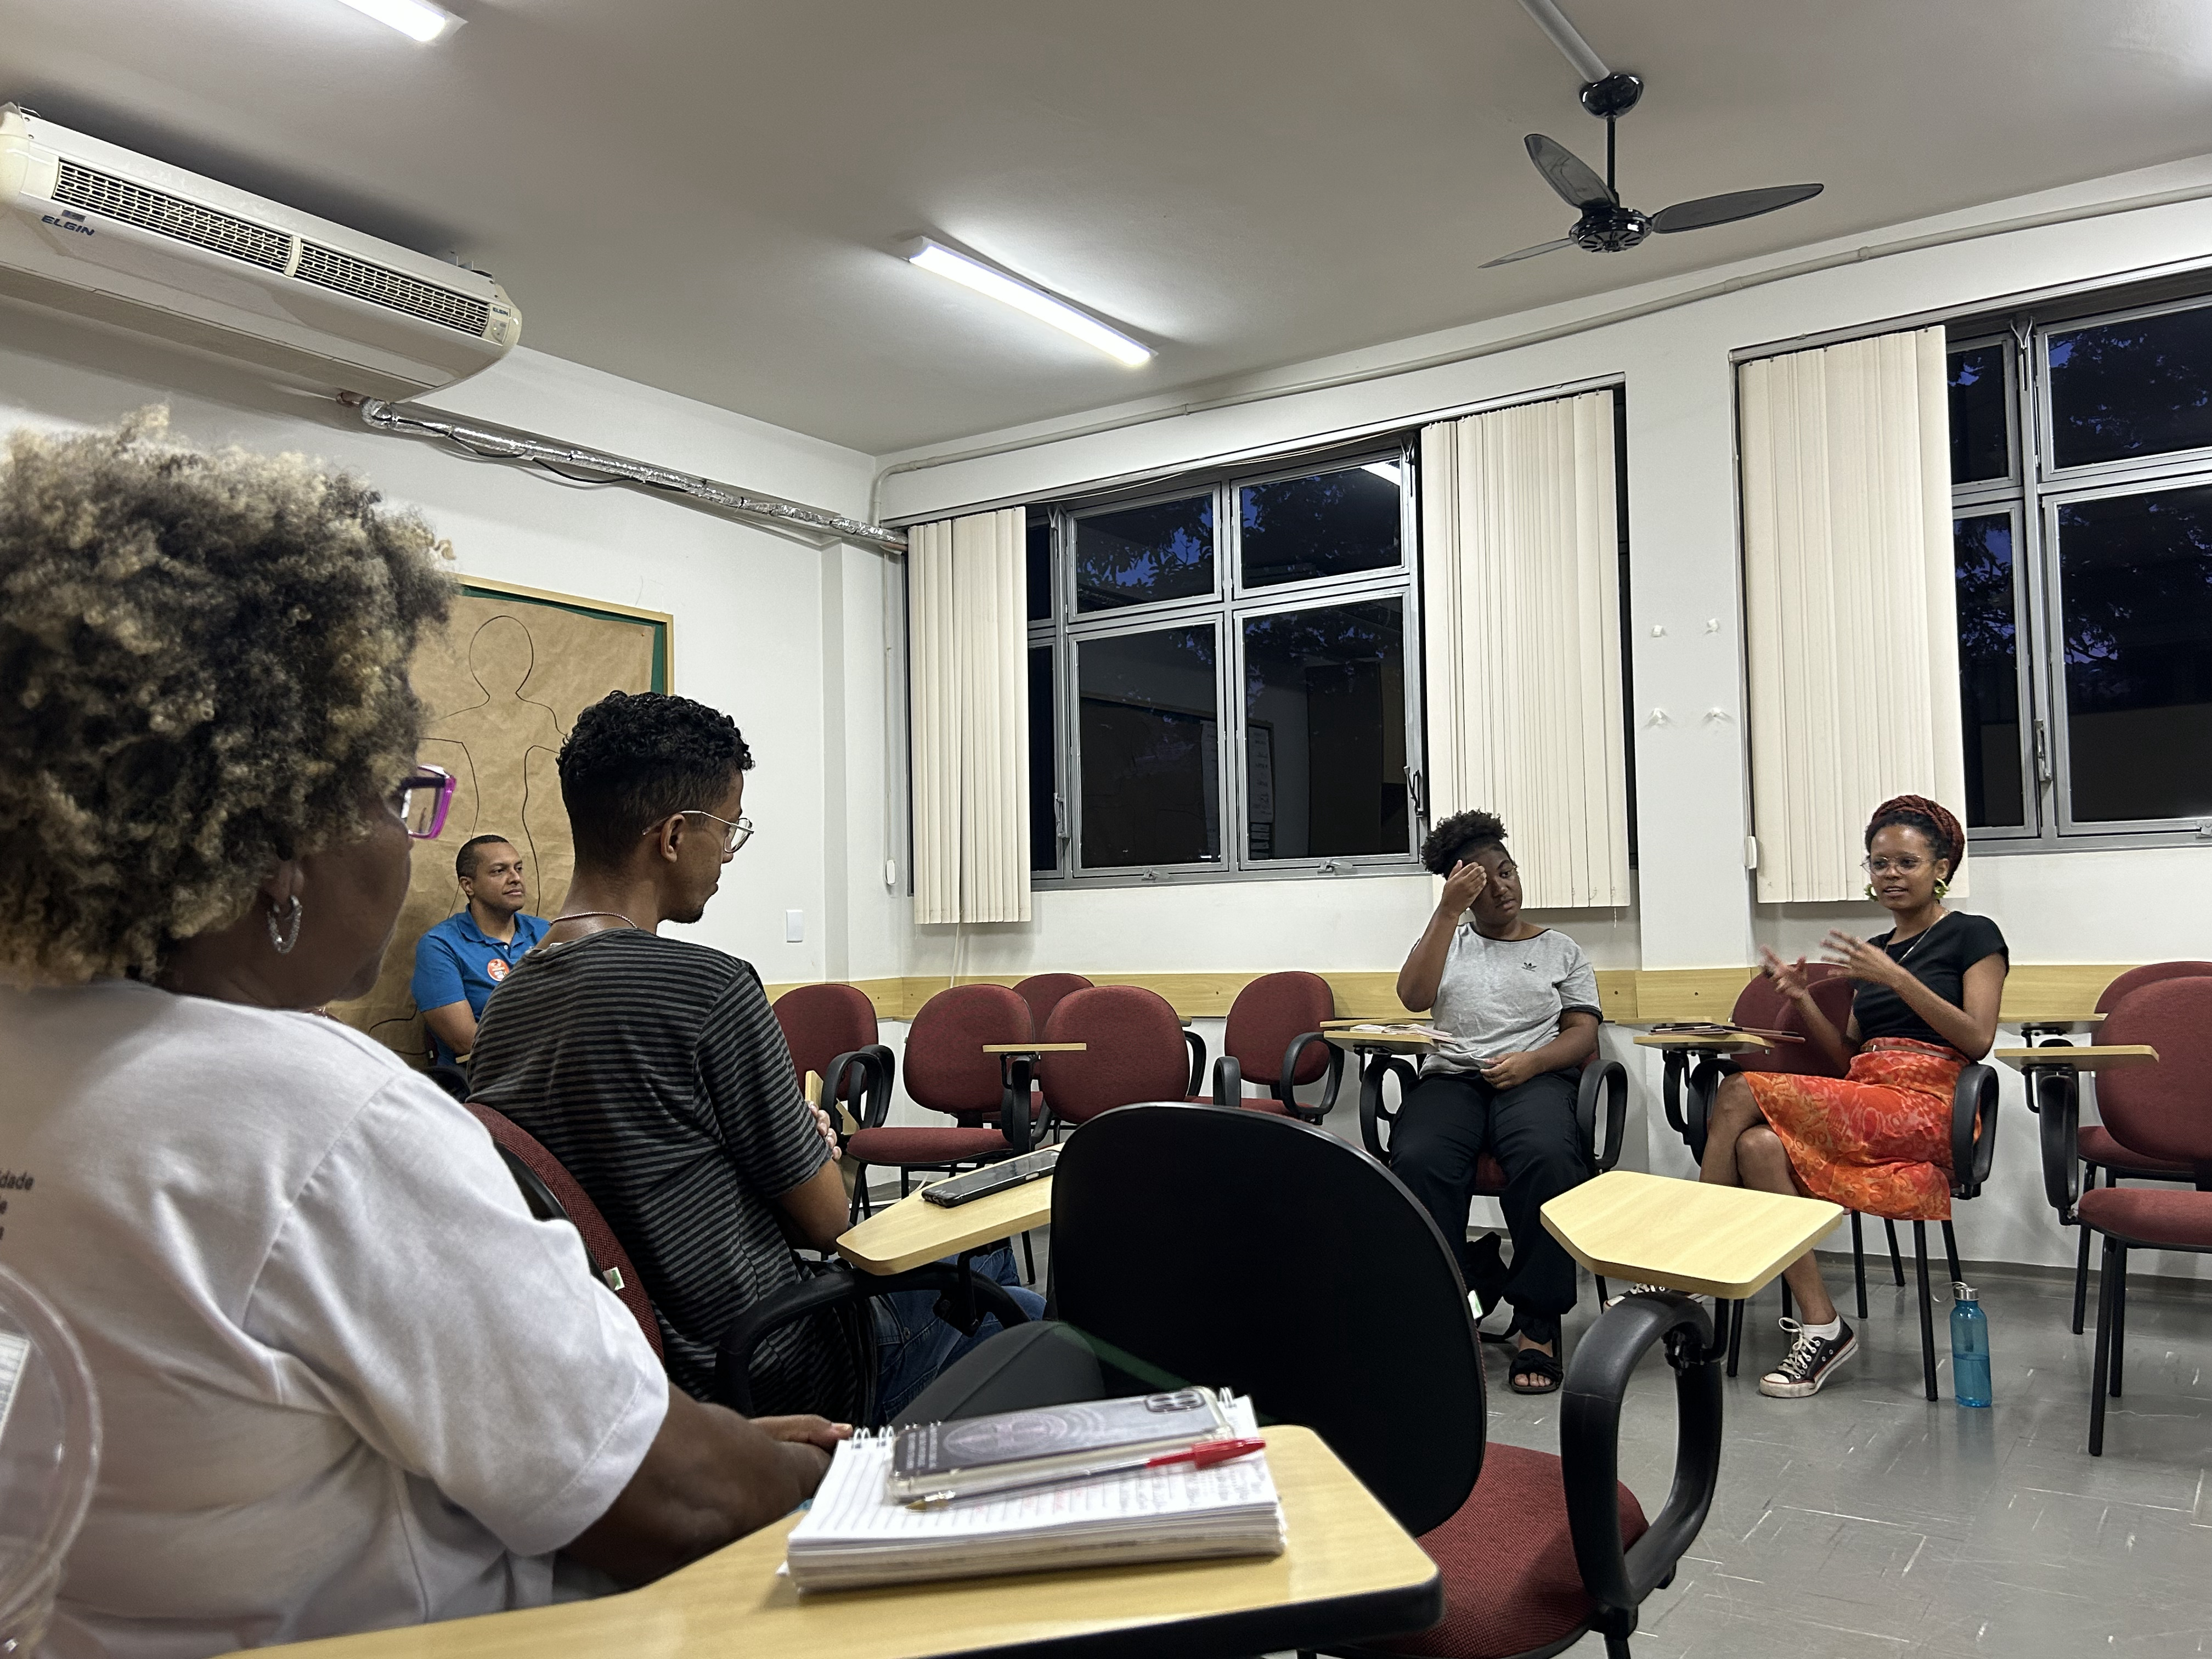 Foto colorida com grupo de pessoas negras em semicírculo, em sala de estudos, debatendo texto